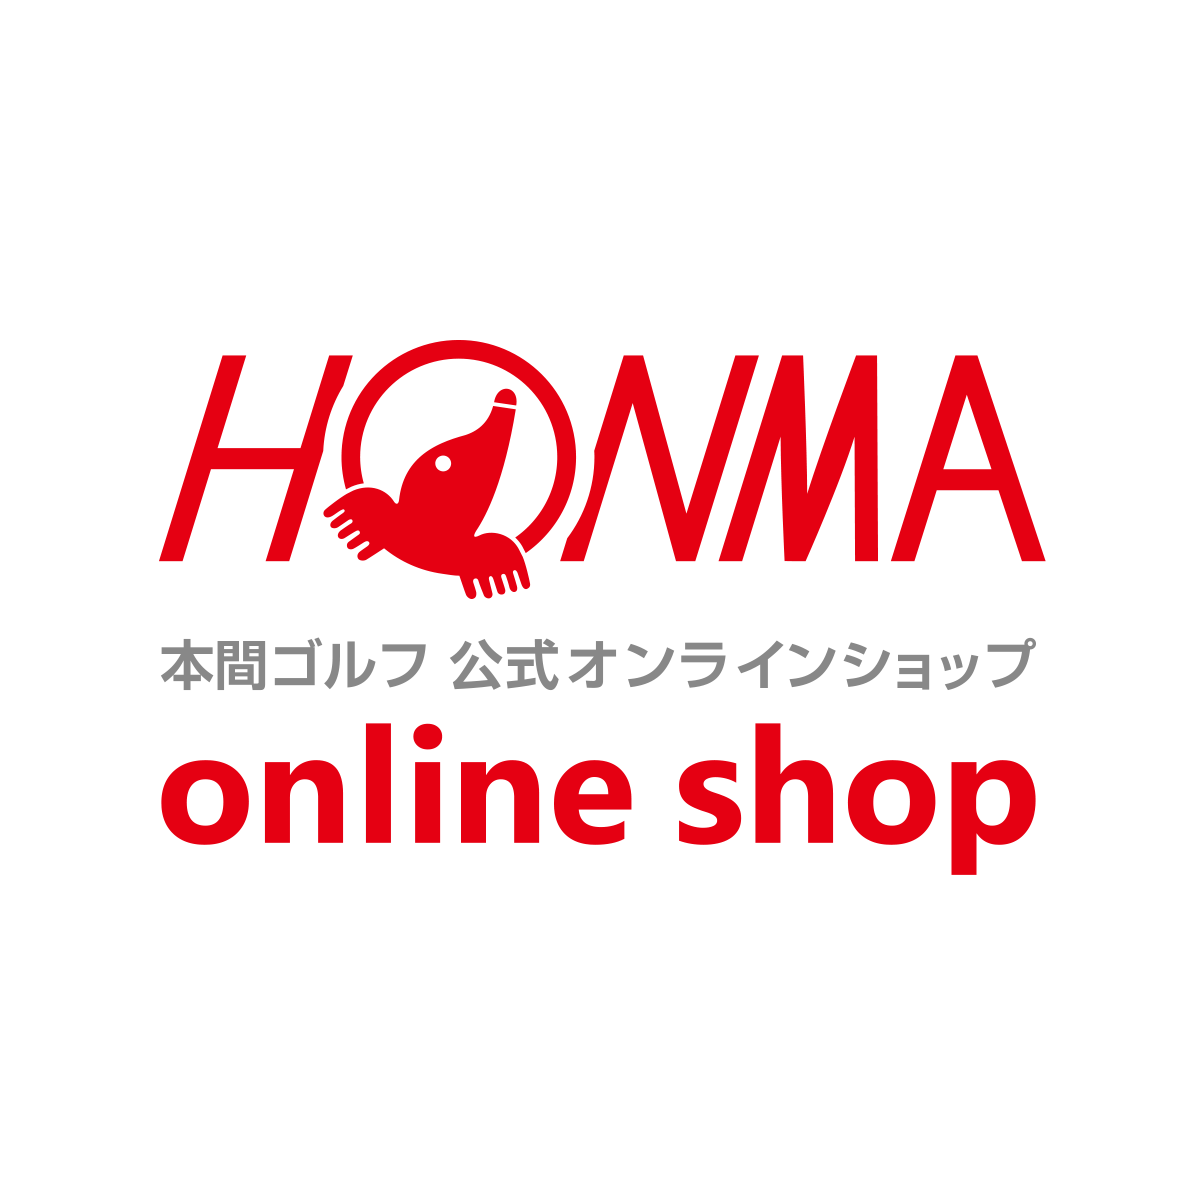 レディースウェア | HONMA直営オンラインショップ